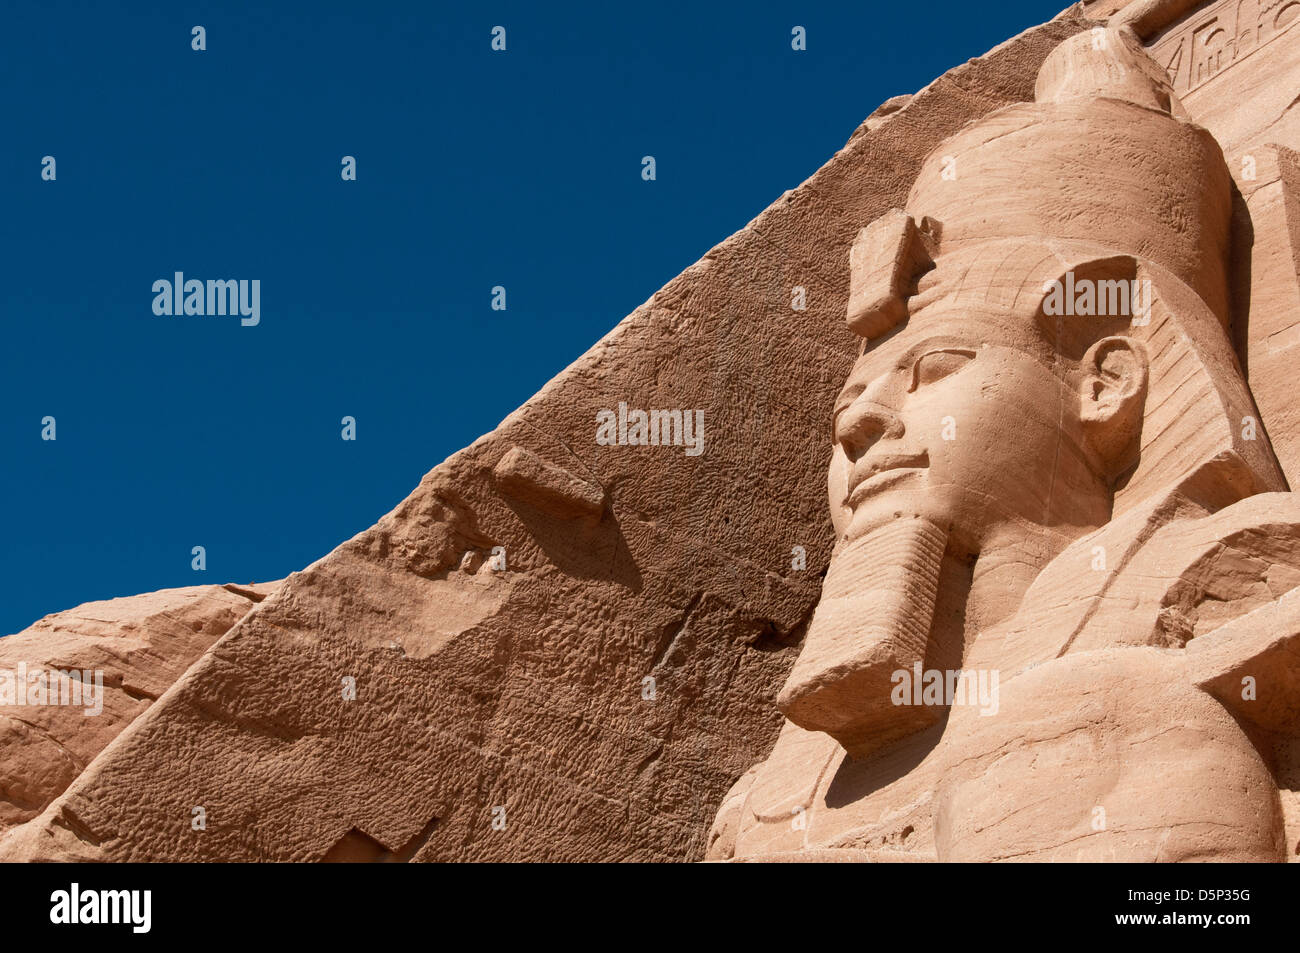 Nahaufnahme eines kolossalen Statuen von Ramses II, trägt die Doppelkrone von unter- und Oberägypten Abu Simbel Nubien Ägypten Stockfoto